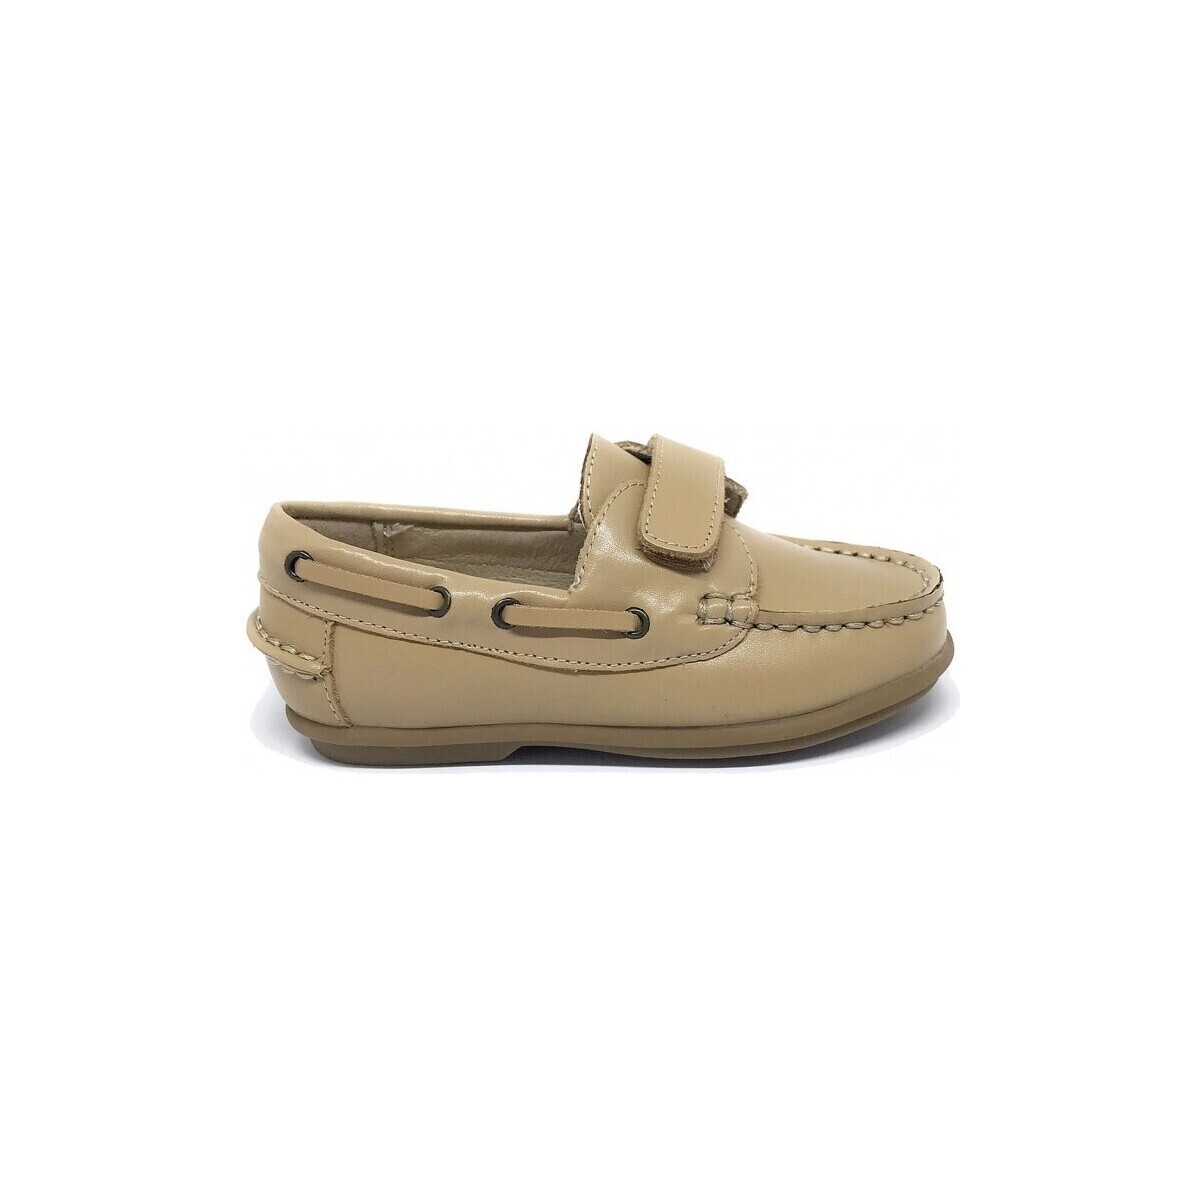 Boat shoes D’bébé 24536-18